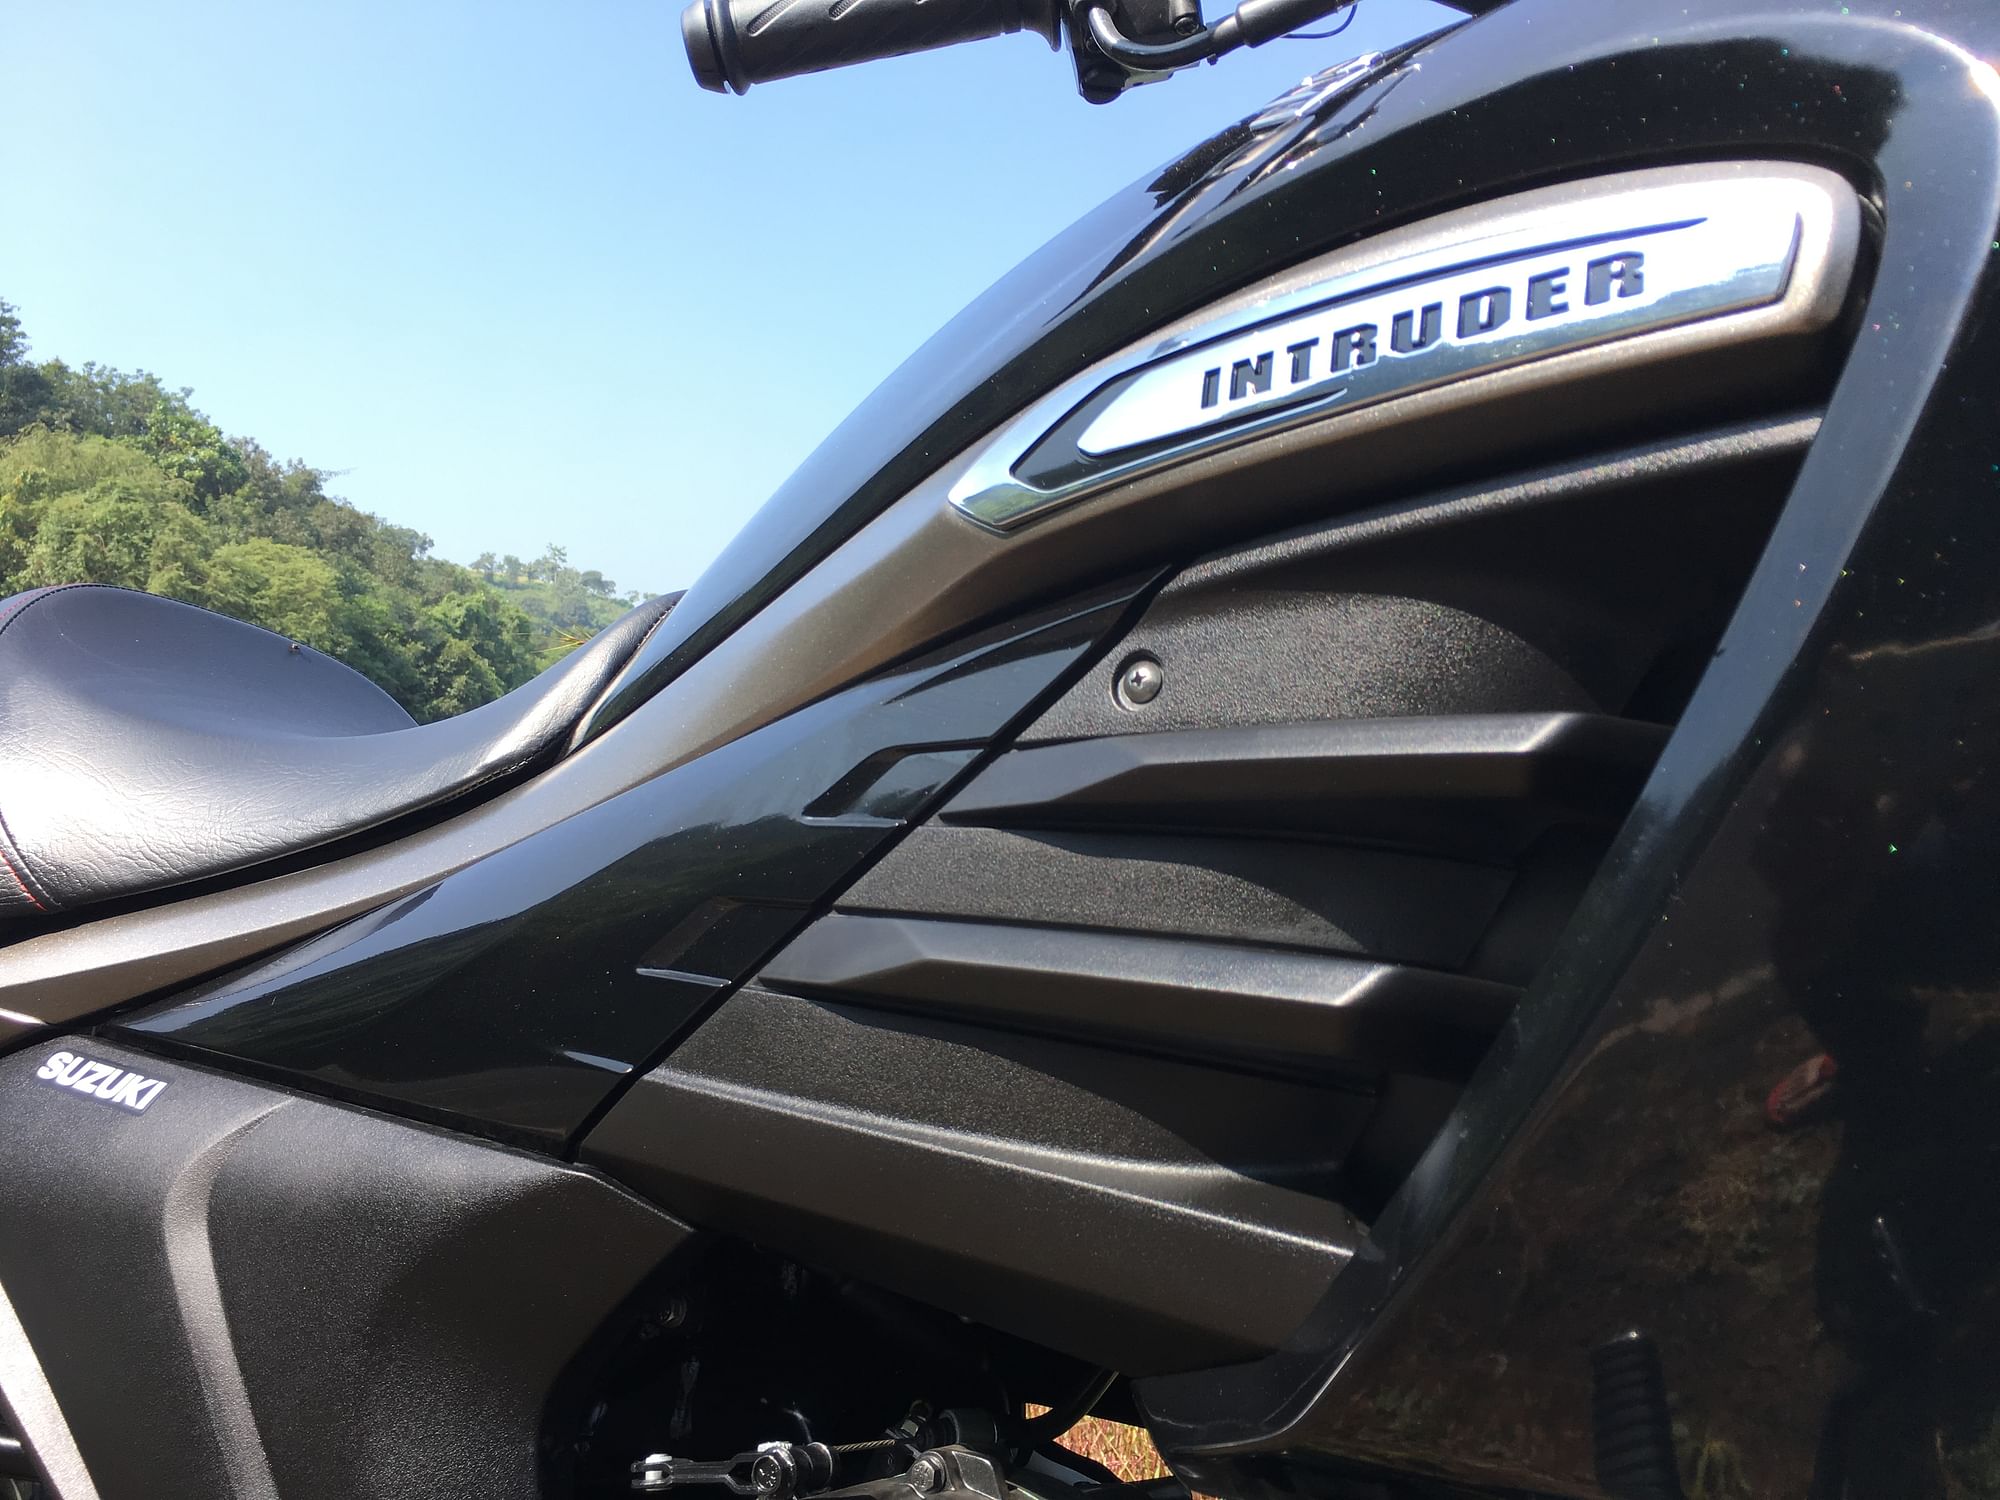 Bajaj Avenger & Suzuki Intruder – The 150 cc Cruiser Showdown